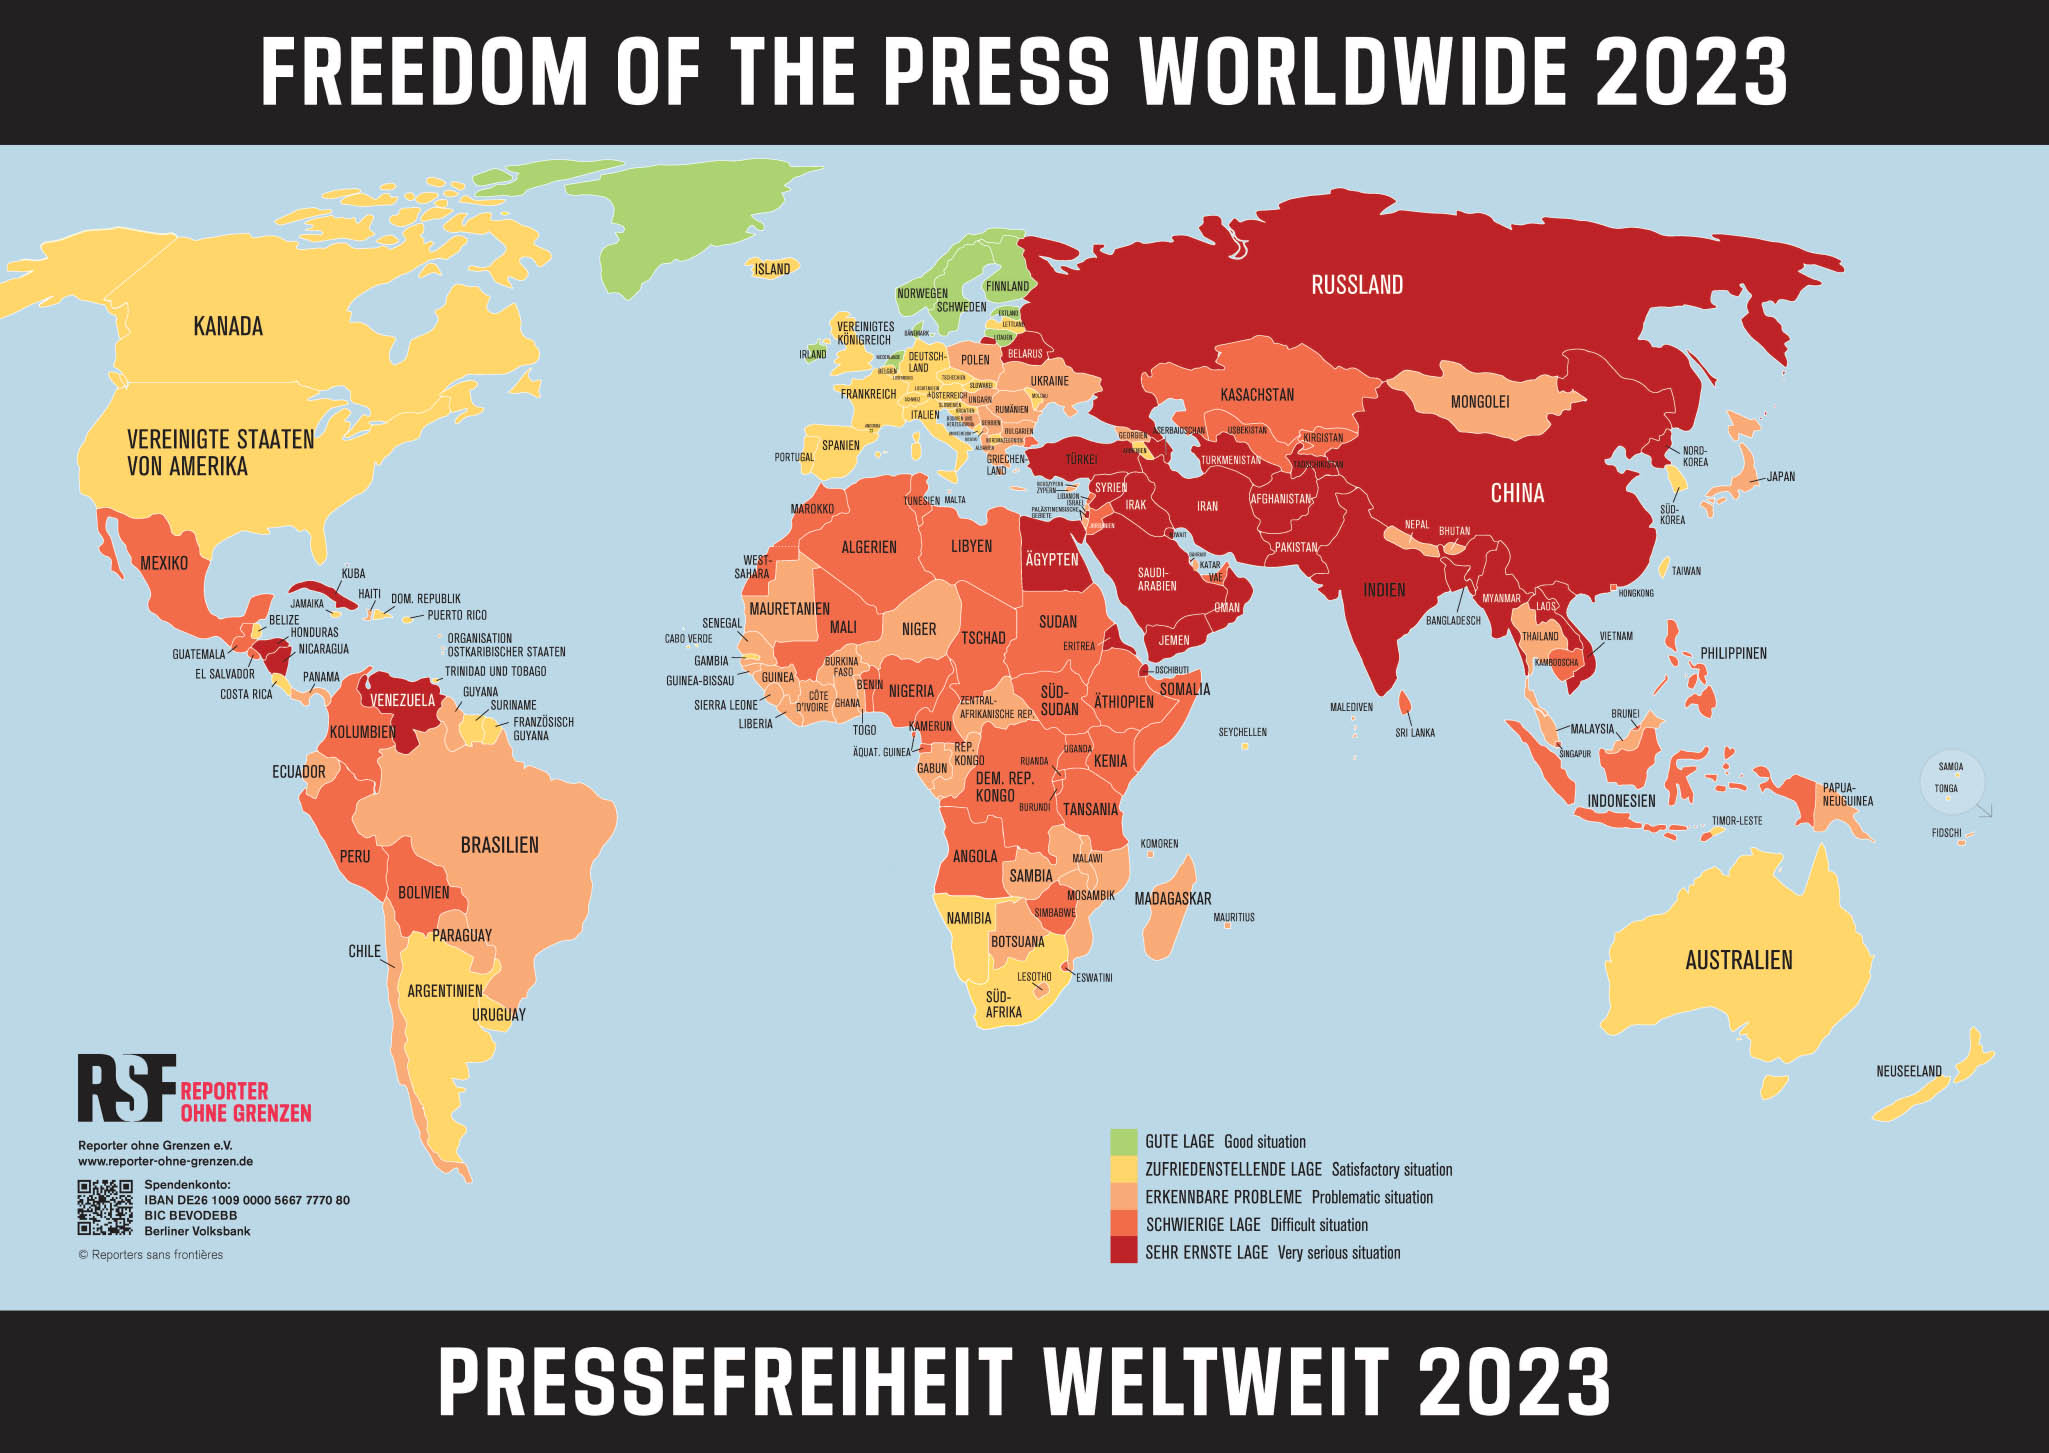 Weltkarte Pressefreiheit 2023